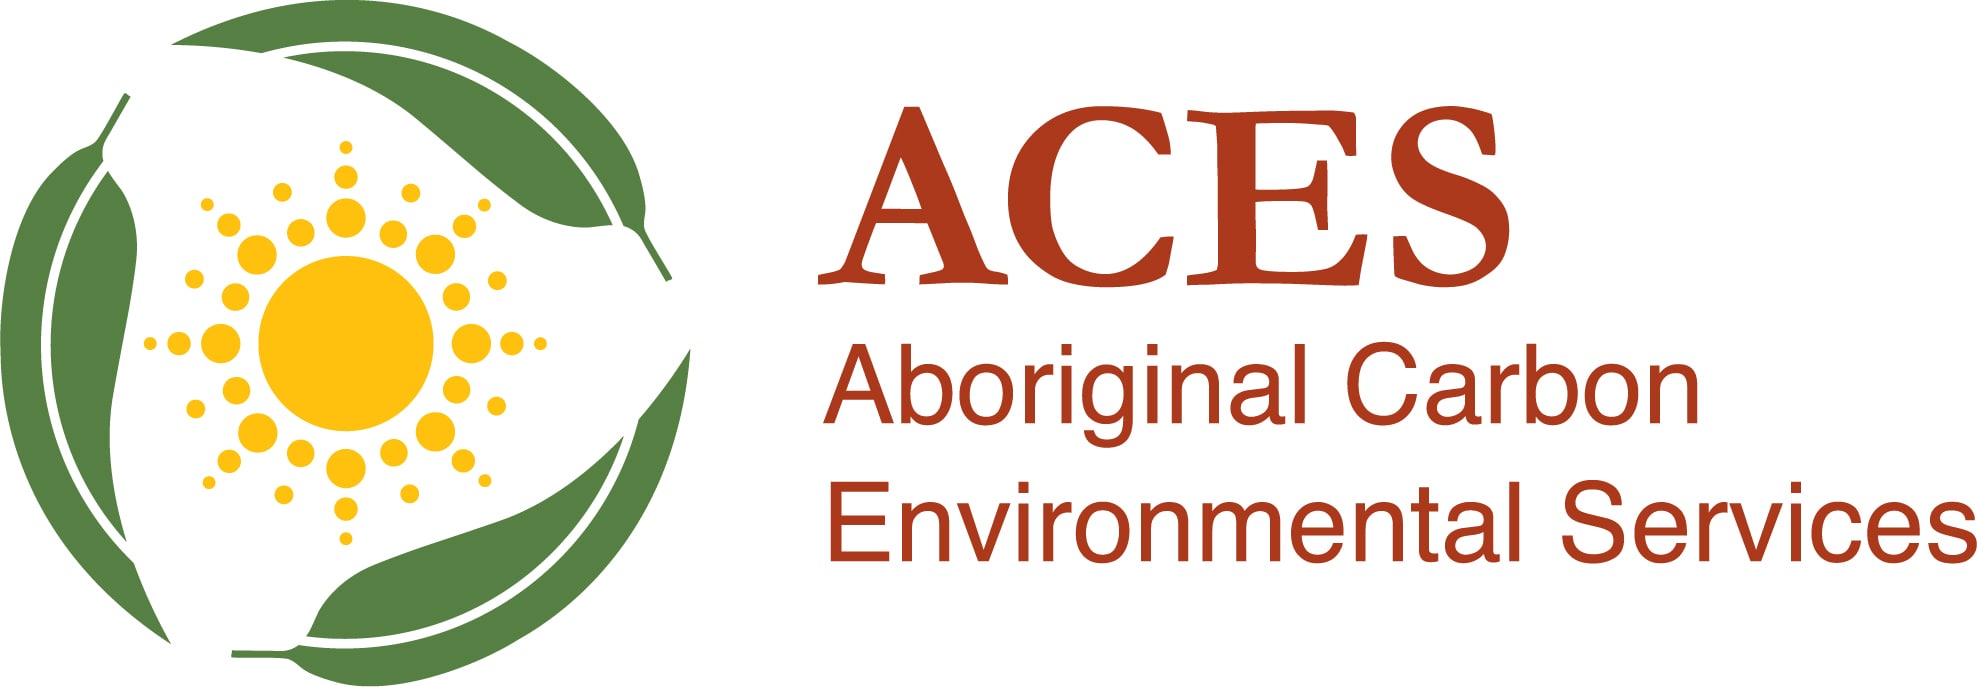 Aboriginal Carbon & Environmental Services Logo